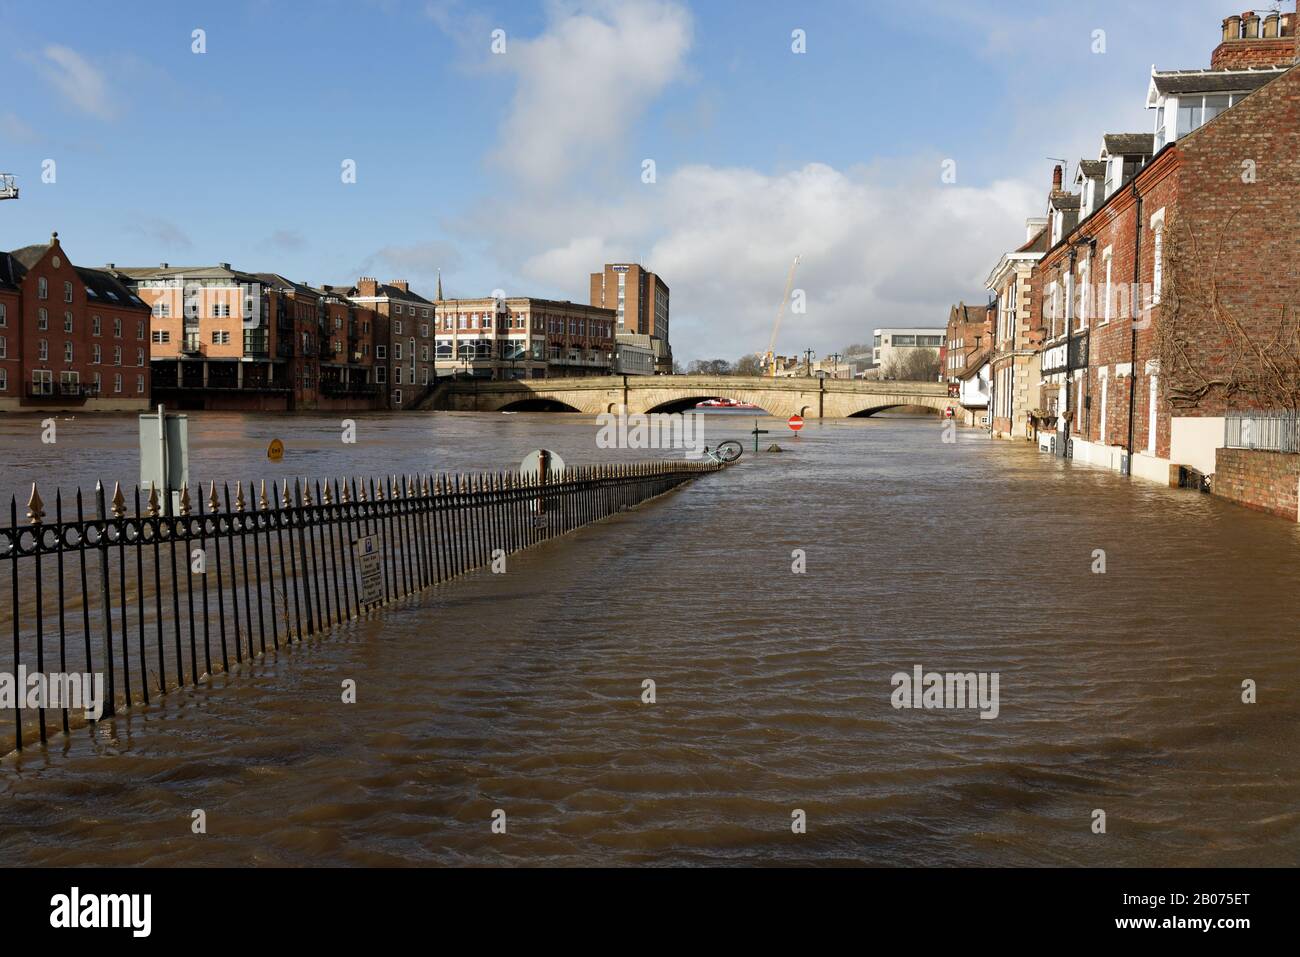 Kings Landing à côté de la rivière Ouse a inondé en raison de fortes précipitations causées par Storm Ciara et Storm Dennis Banque D'Images